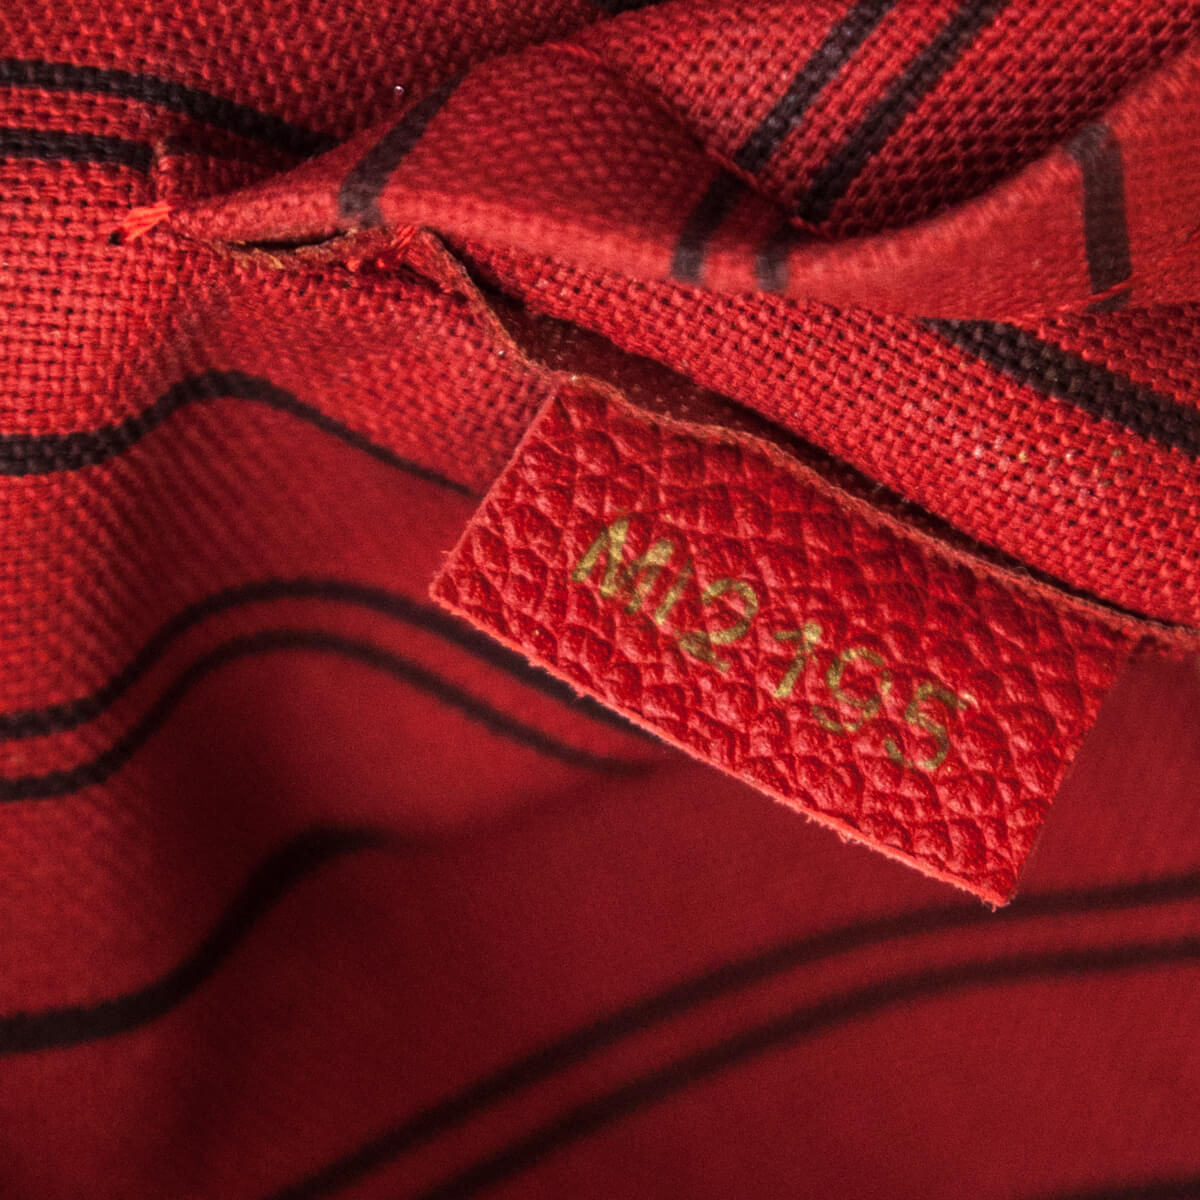 Red Louis Vuitton Empreinte Montaigne MM Bag, Sac à main Louis Vuitton  Steamer Bag petit modèle en cuir vert-kaki beige et noir